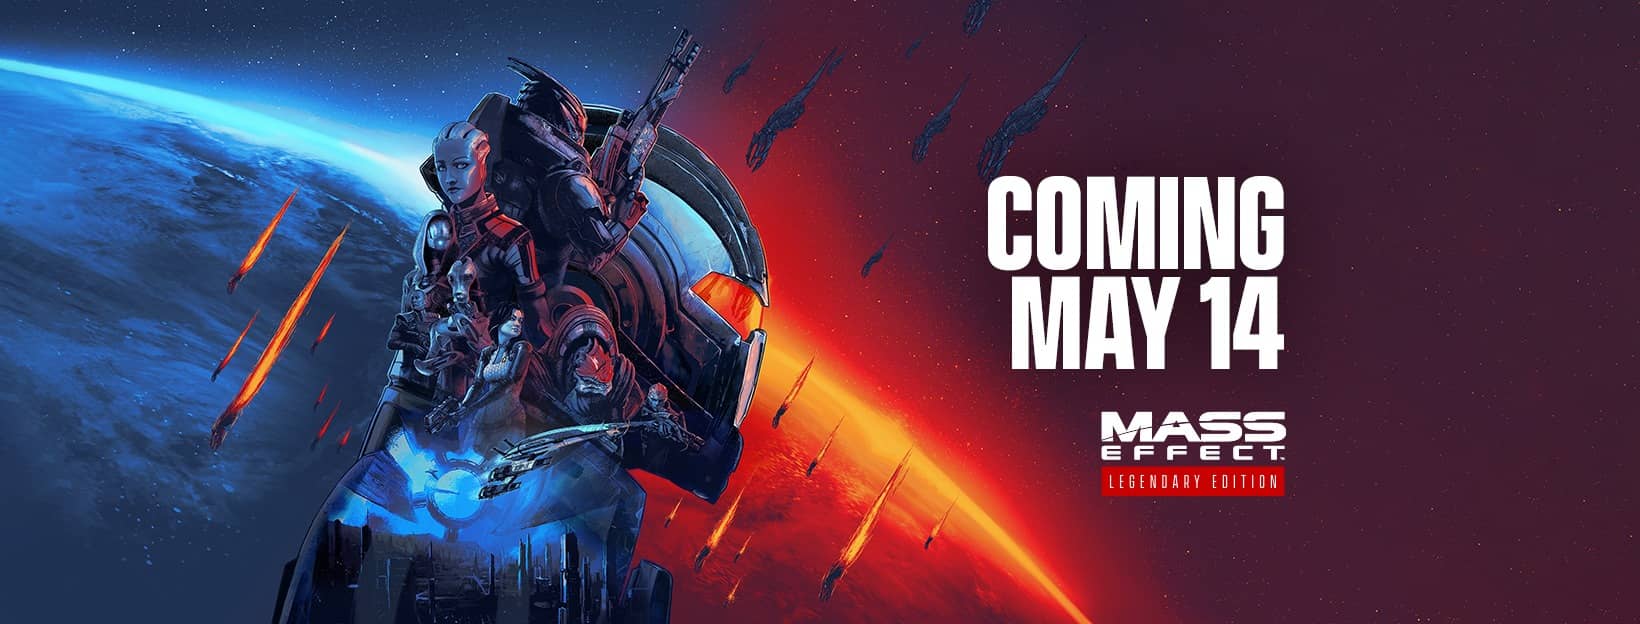 Mass Effect Legendary Edition – logo